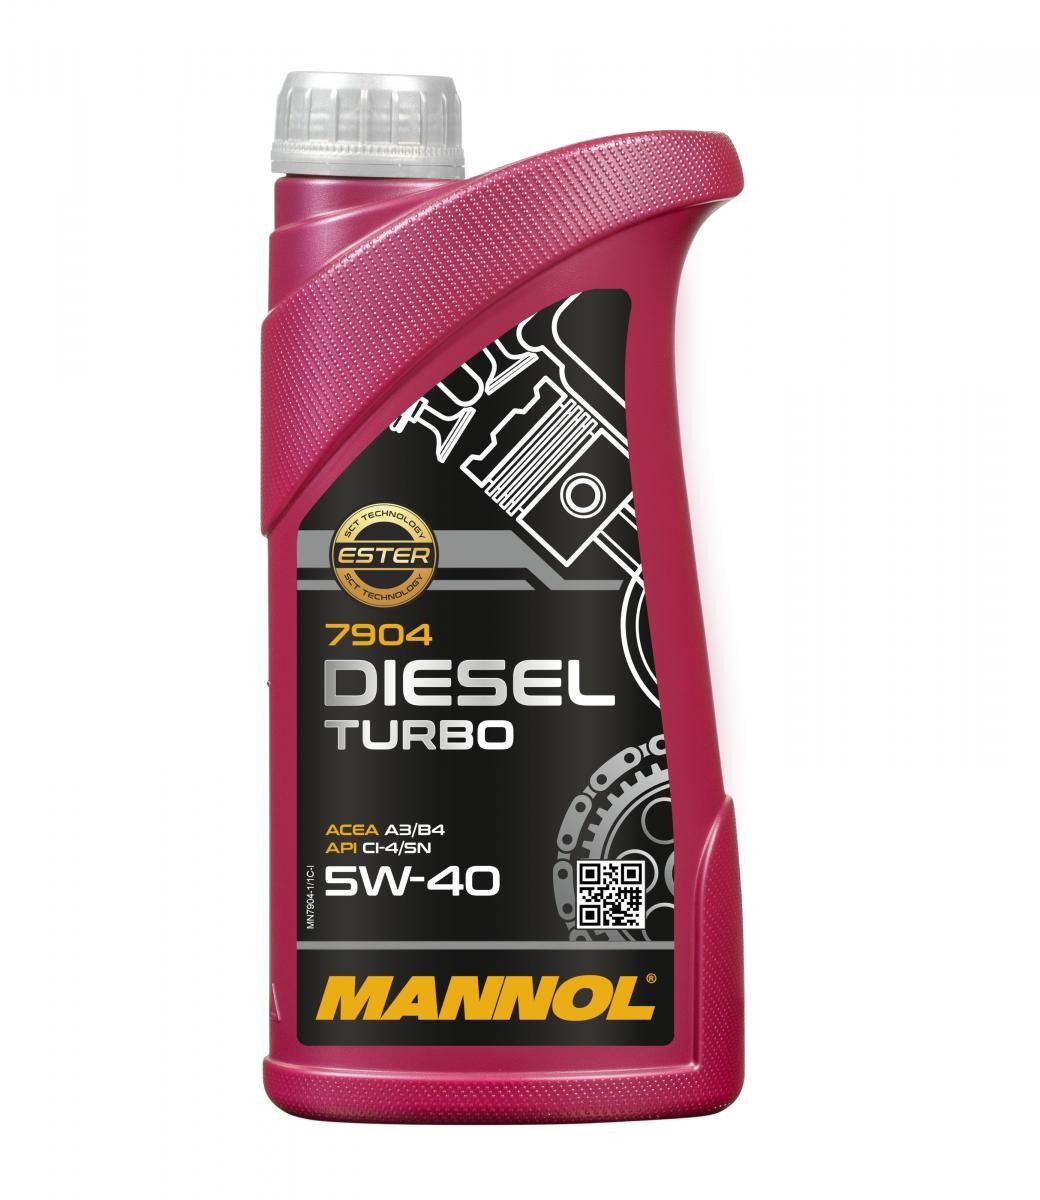 MANNOL DIESEL TURBO MN7904-1 Motorolie 5W-40, 1L, Synthetische olie